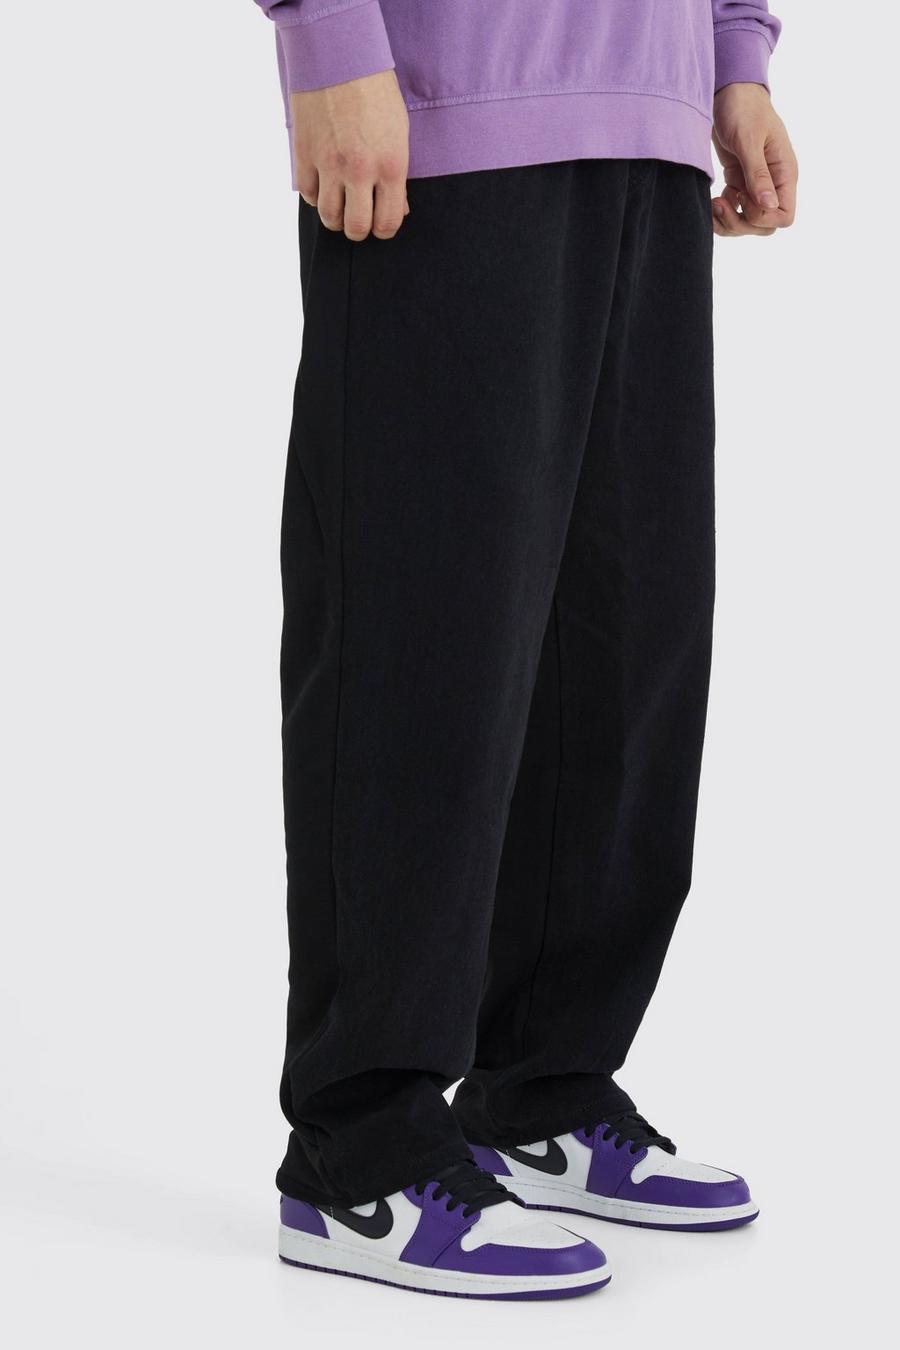 Pantalón deportivo Tall holgado con cintura elástica y estampado híbrido, Washed black